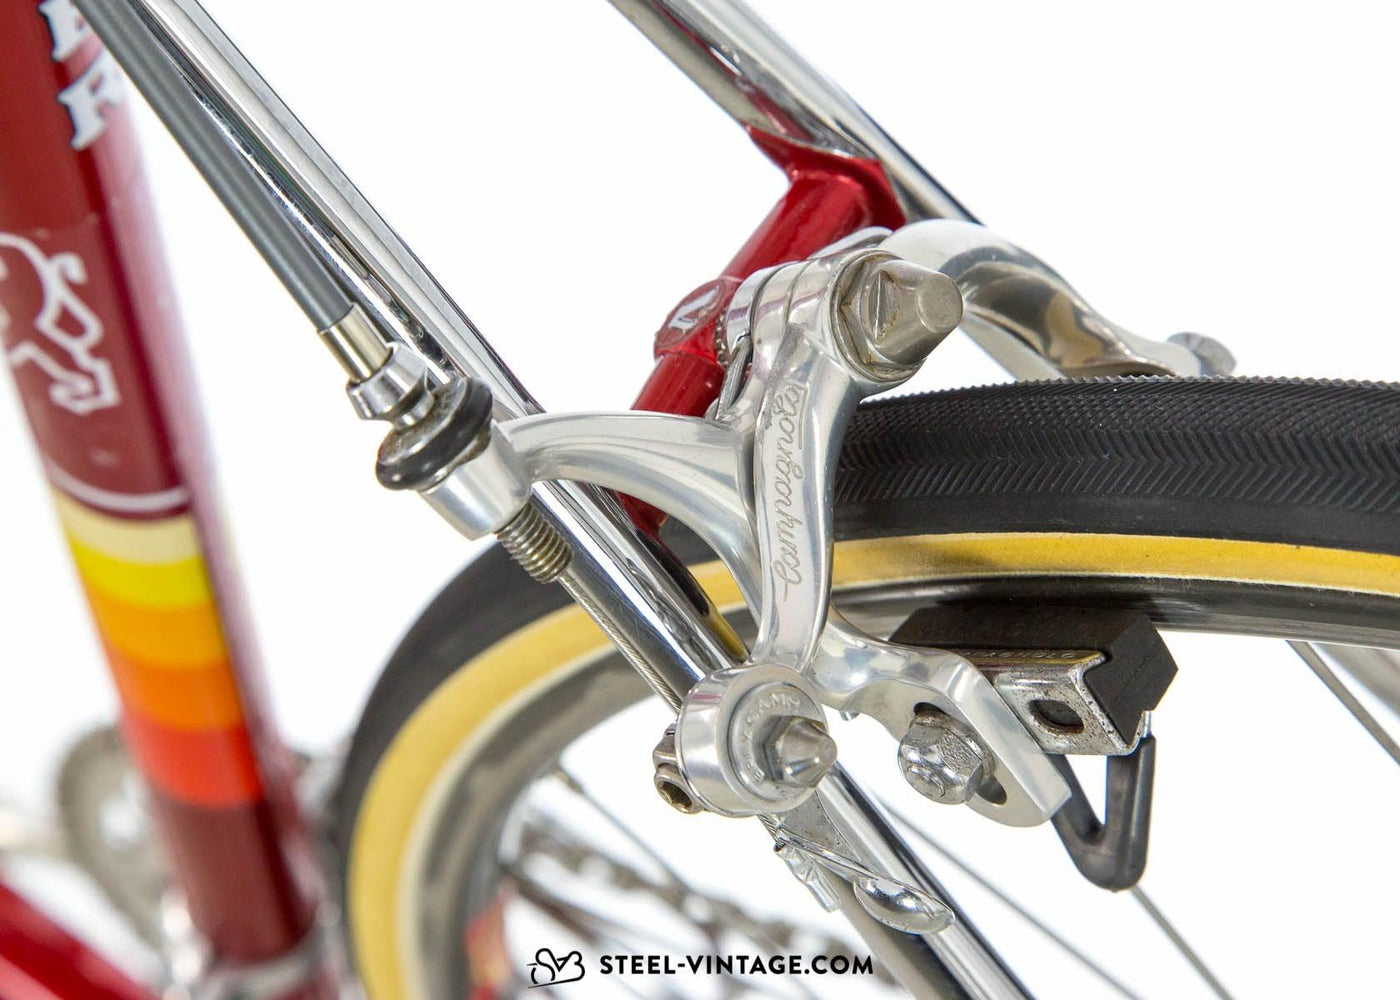 Viner Special Professional Racing Bike 1980s - Steel Vintage Bikes